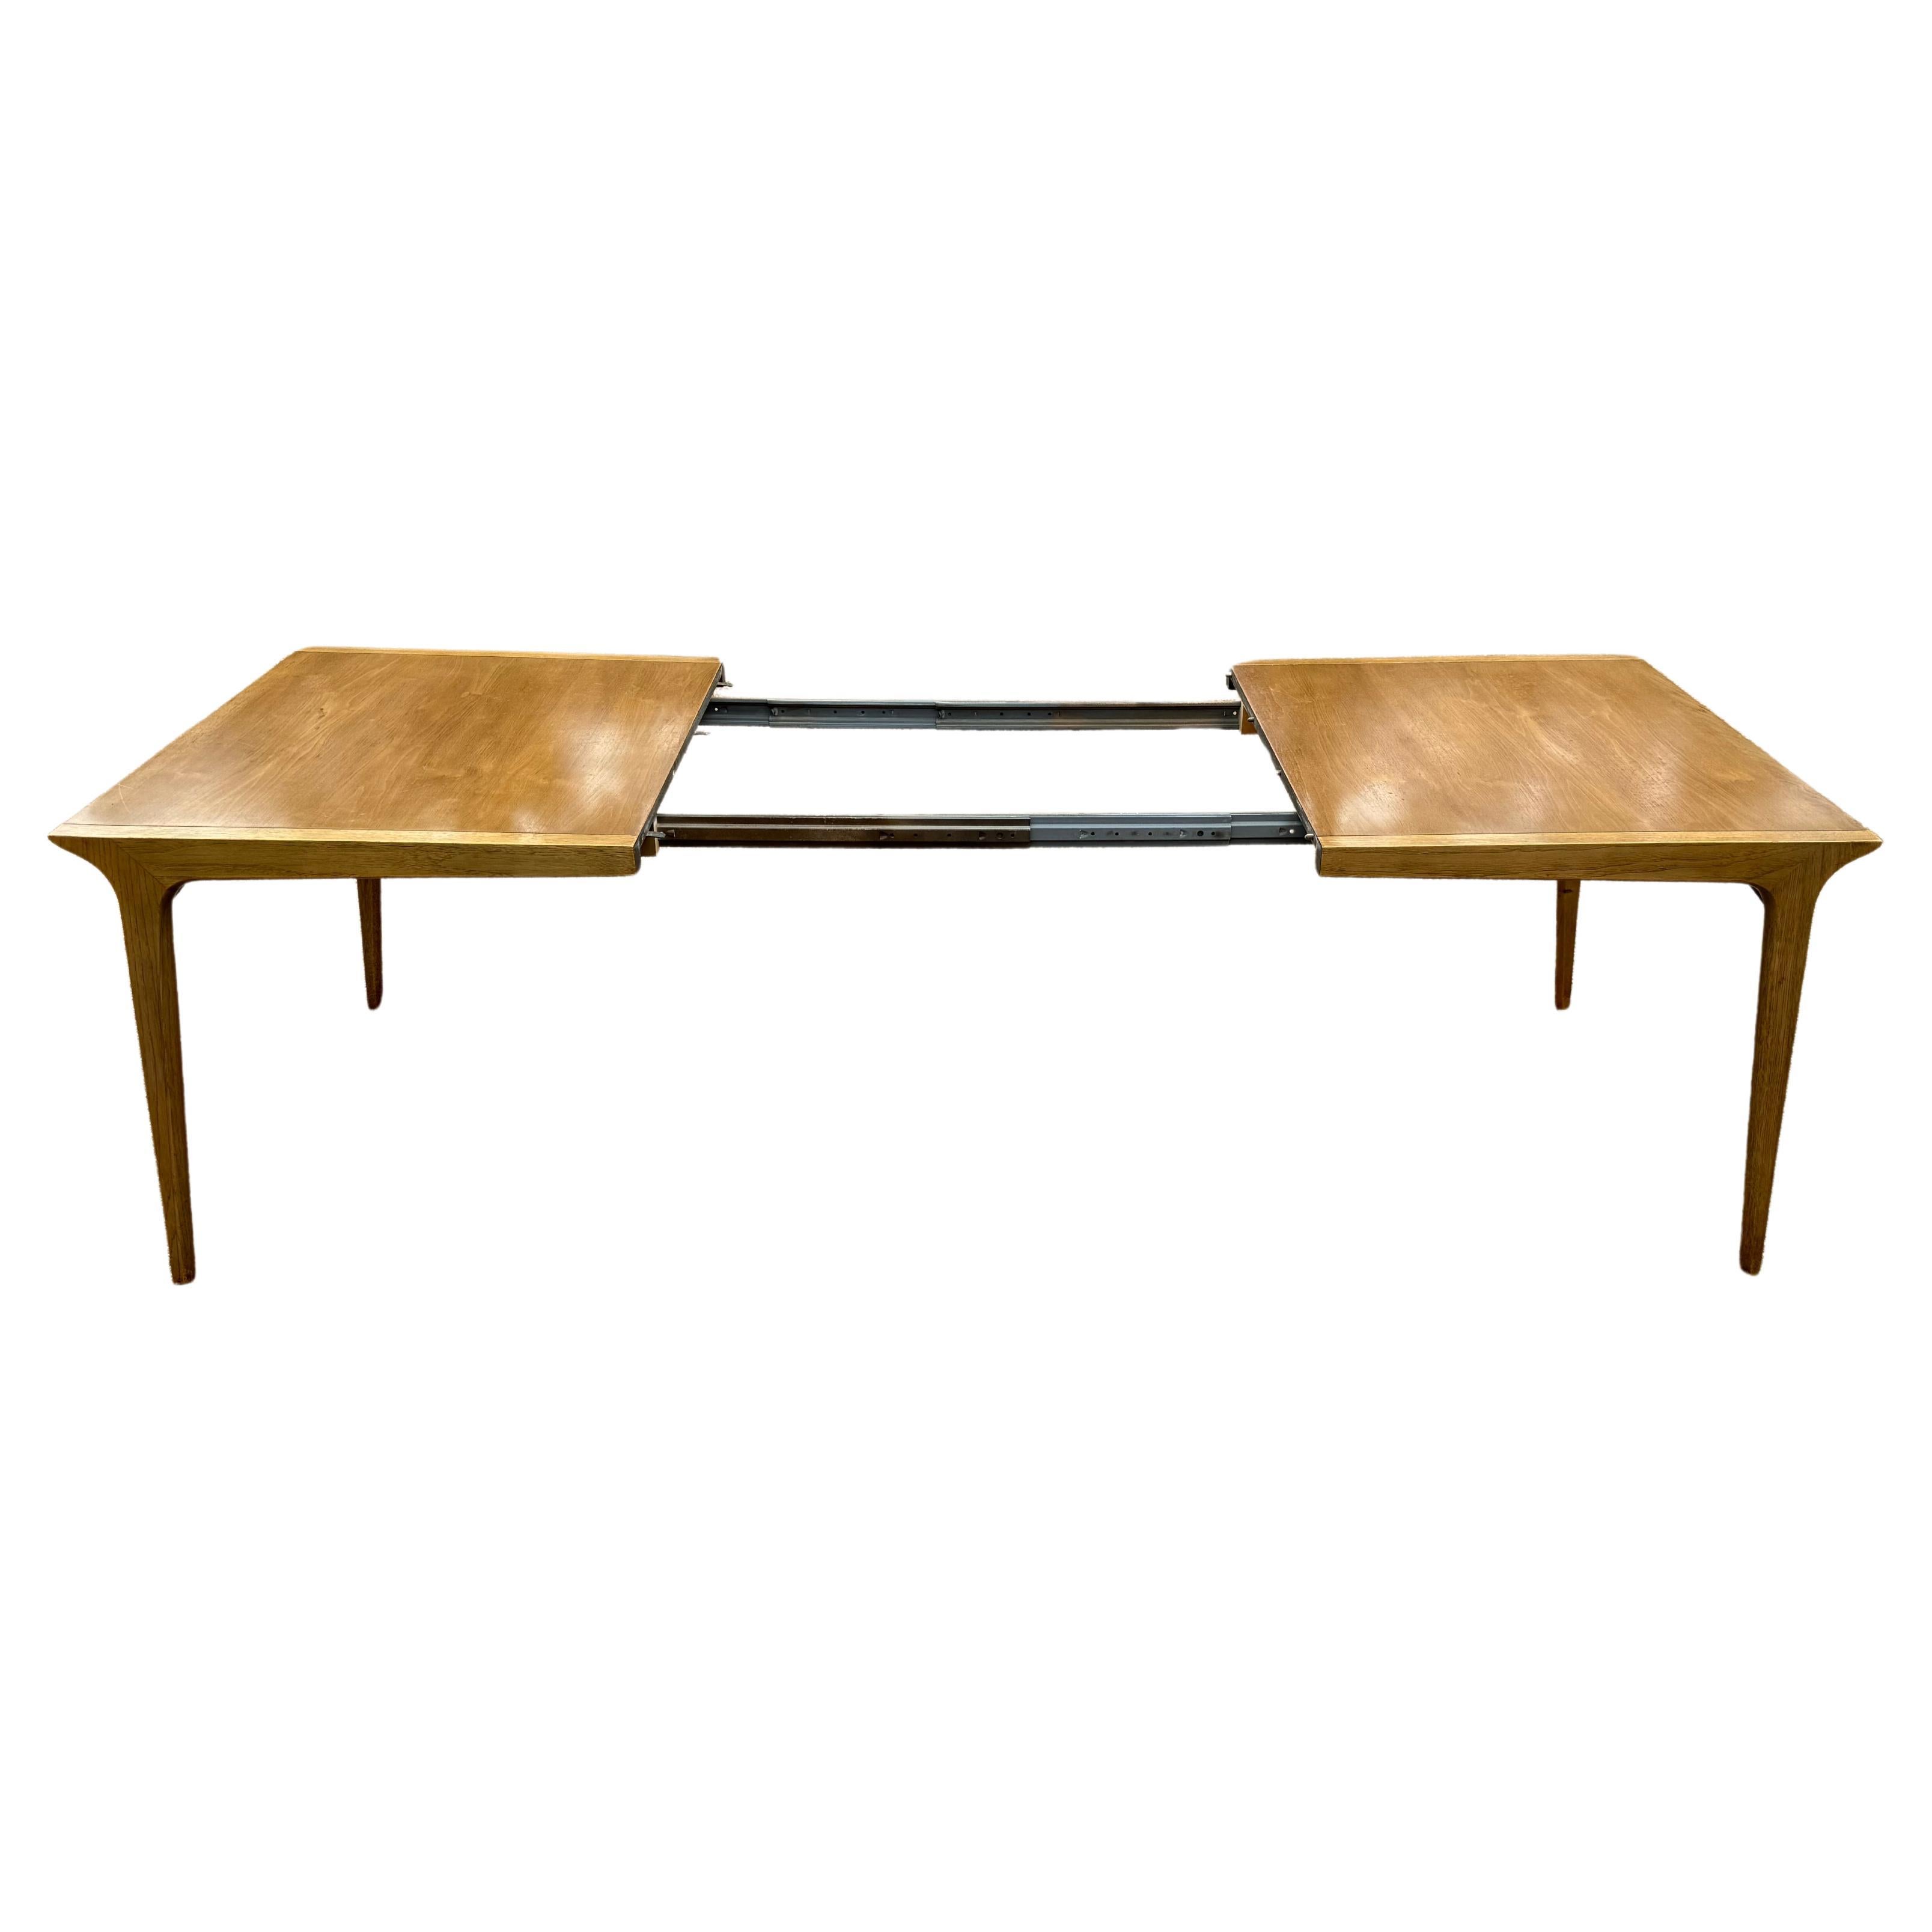 Mid-Century Modern John Van Koert for Drexel - Profile -  Walnut Extension Dining Table - 3 Leaves  For Sale